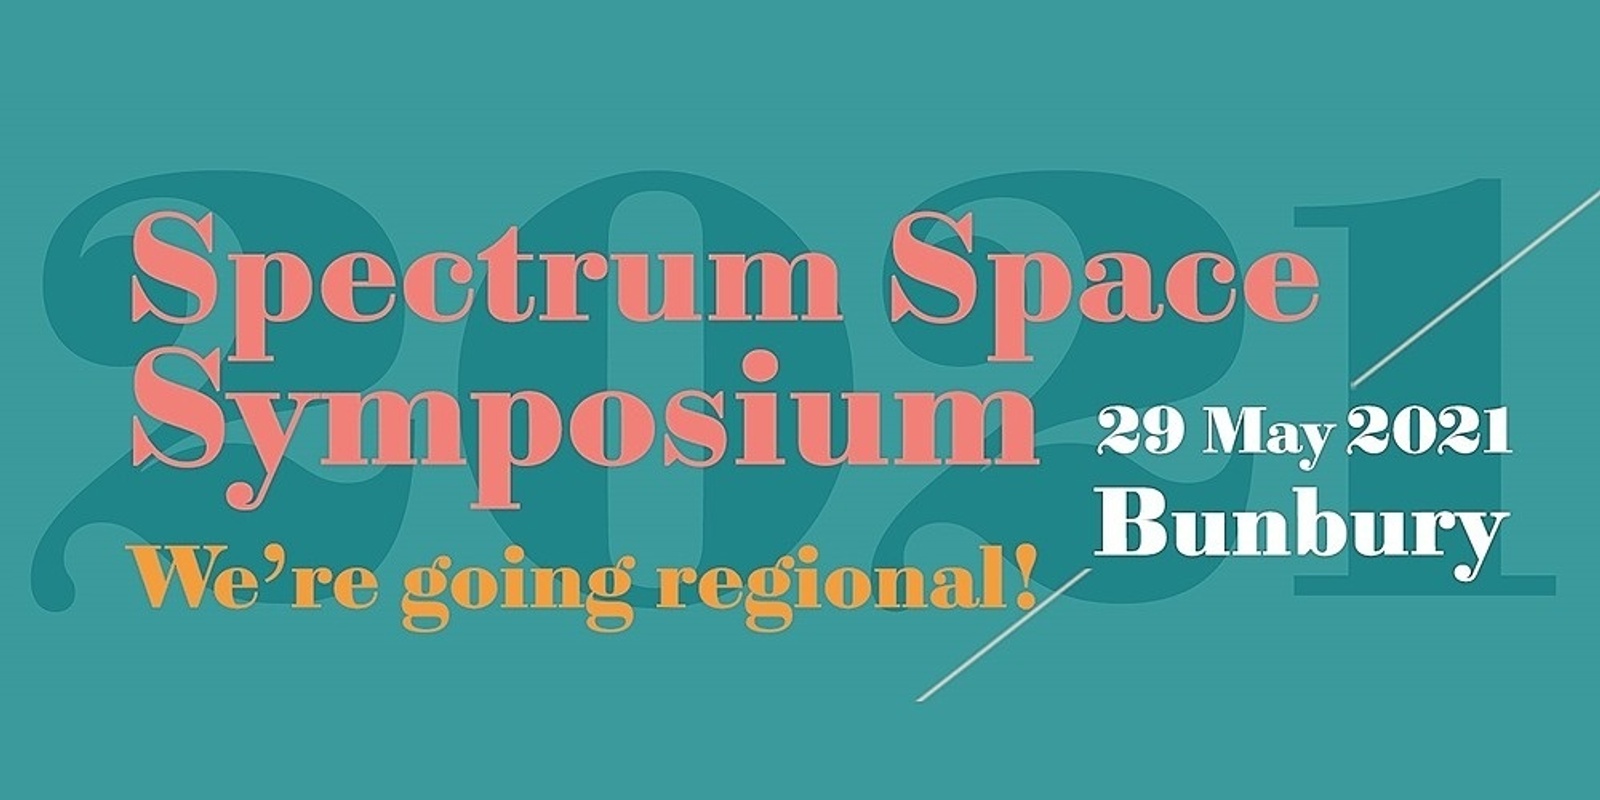 Banner image for Spectrum Space Symposium 2021 - Bunbury